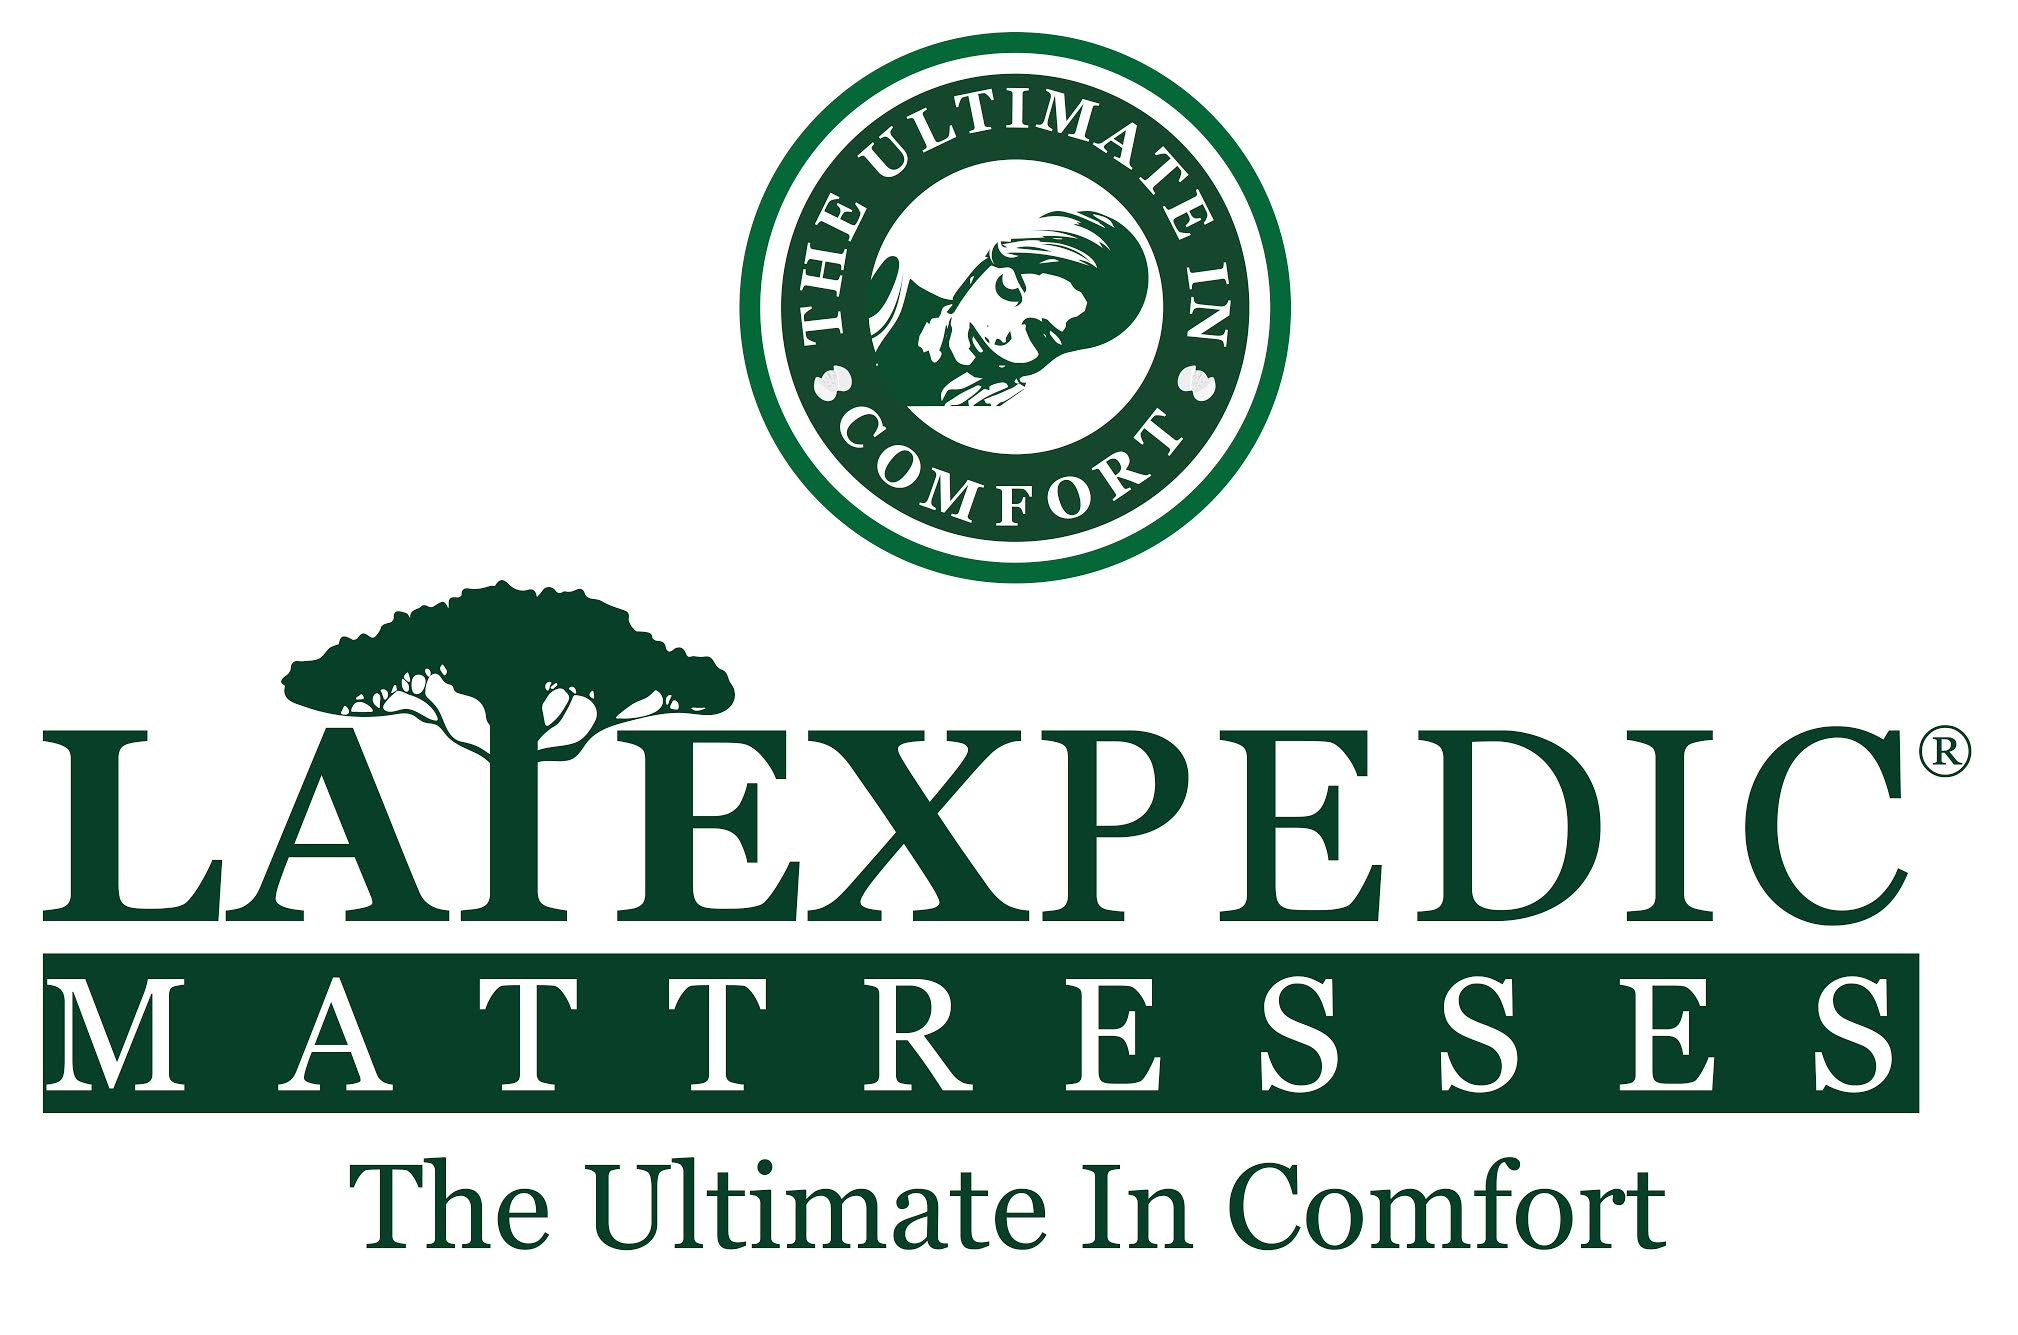 Latex pedic mattresses the ultimate in comfort